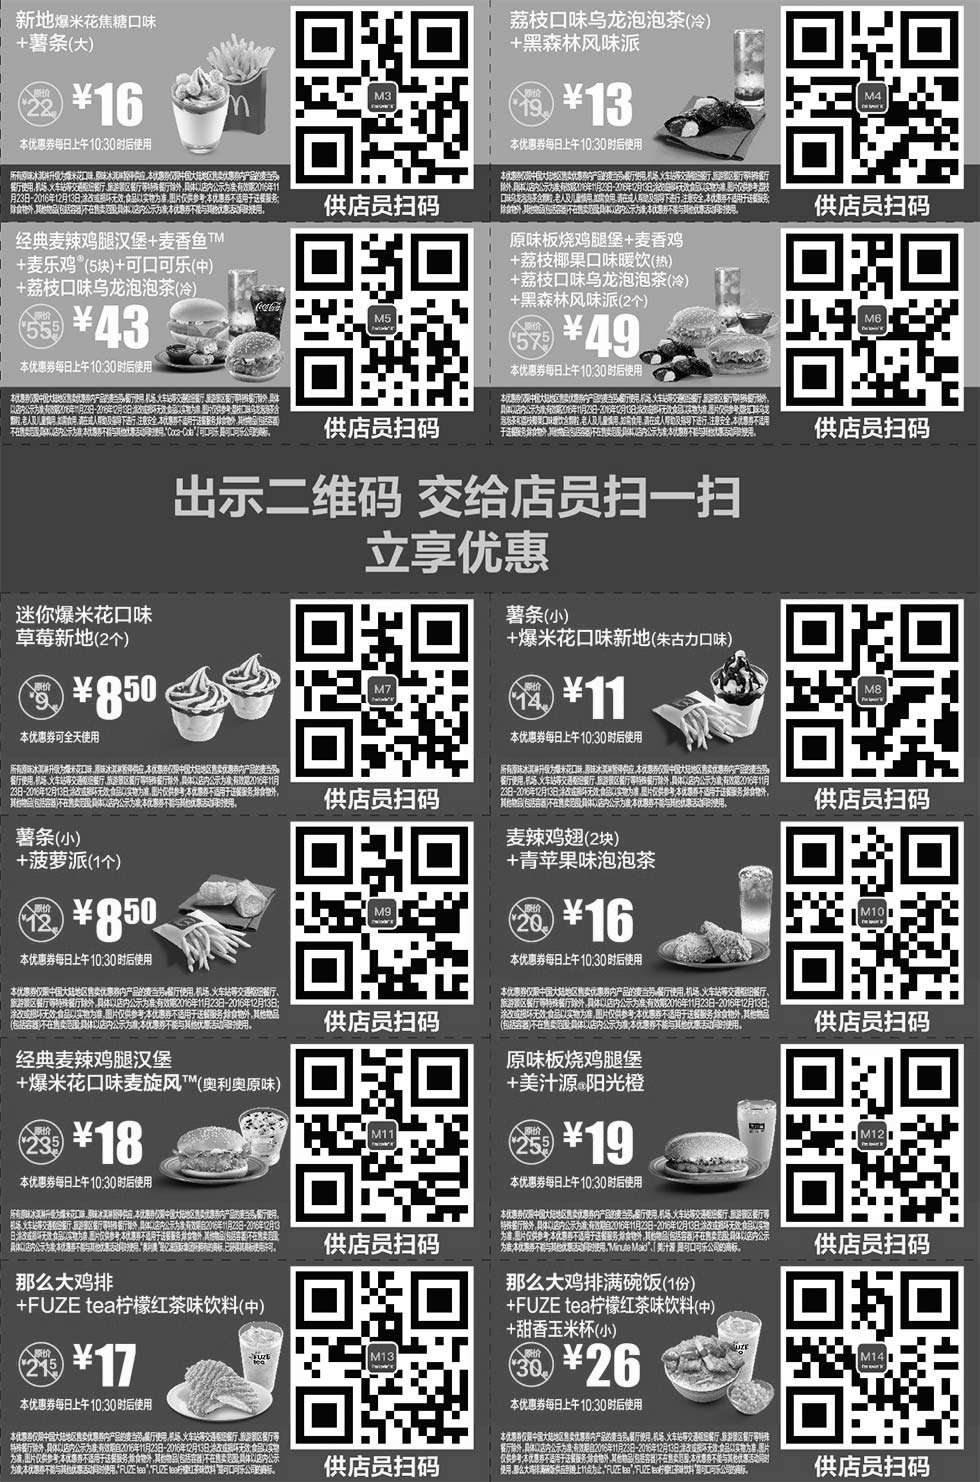 黑白优惠券图片：麦当劳优惠券2016年11月12月手机版整张版本，手机出示券码享受M记优惠 - www.5ikfc.com